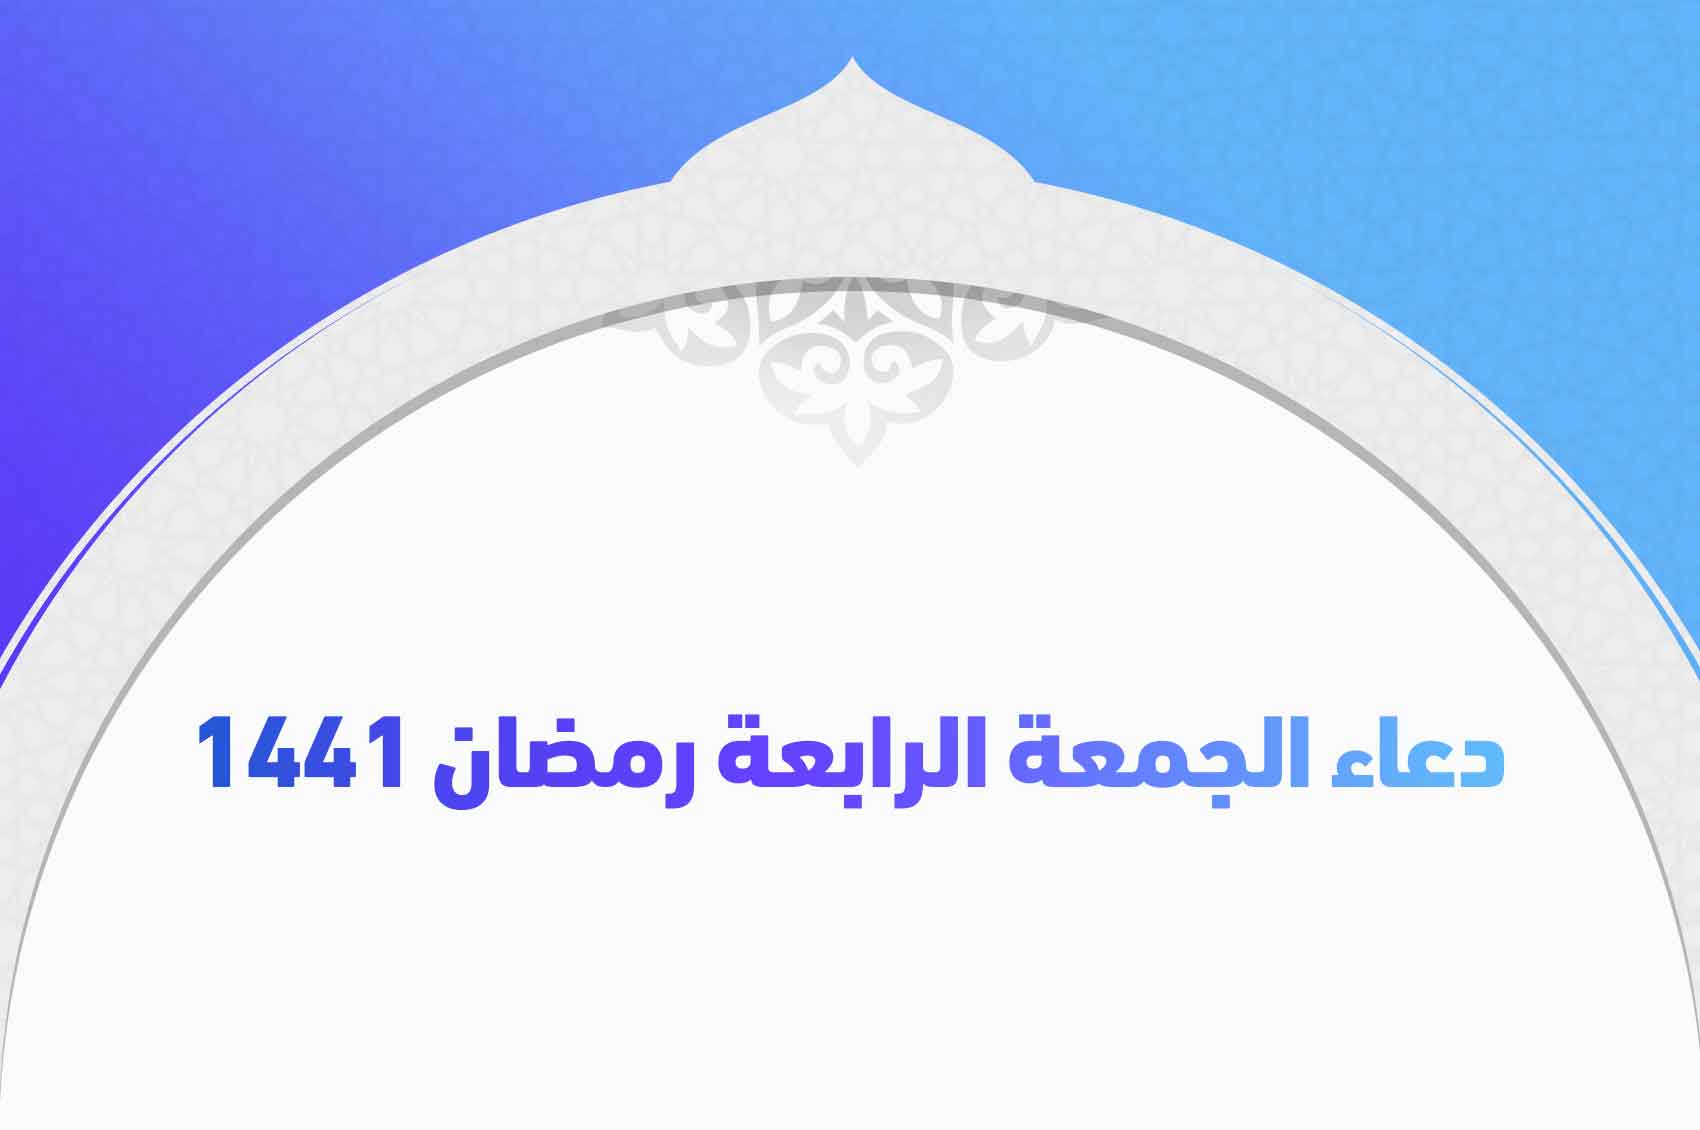 دعاء الجمعة الرابعة رمضان 1441